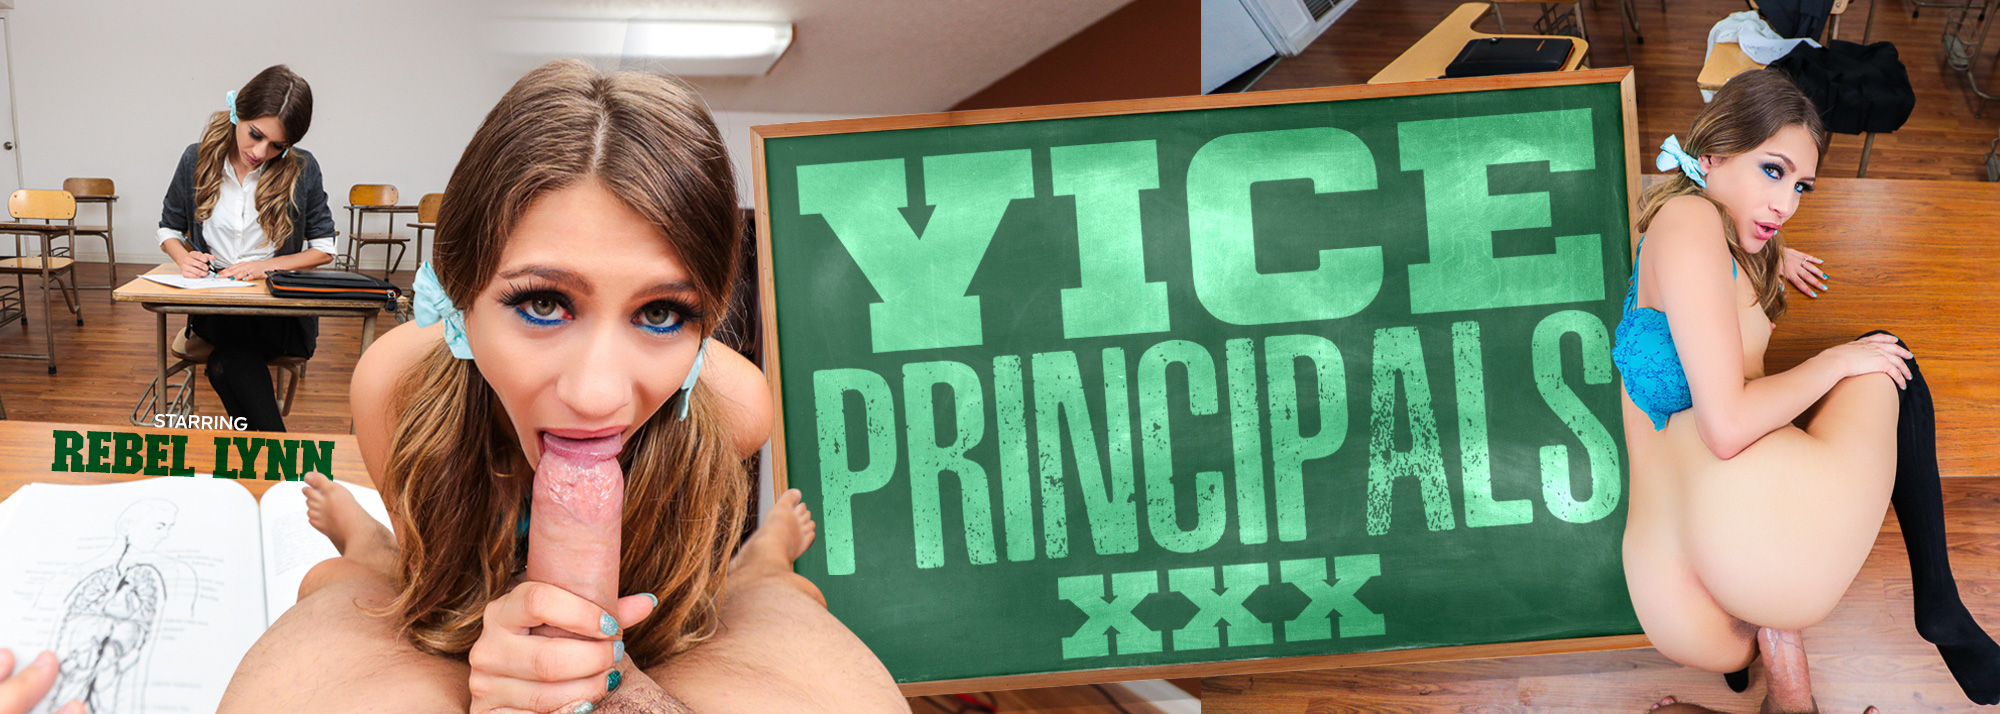 Vice Principals XXX - VR Porn Video, Starring Rebel Lynn VR